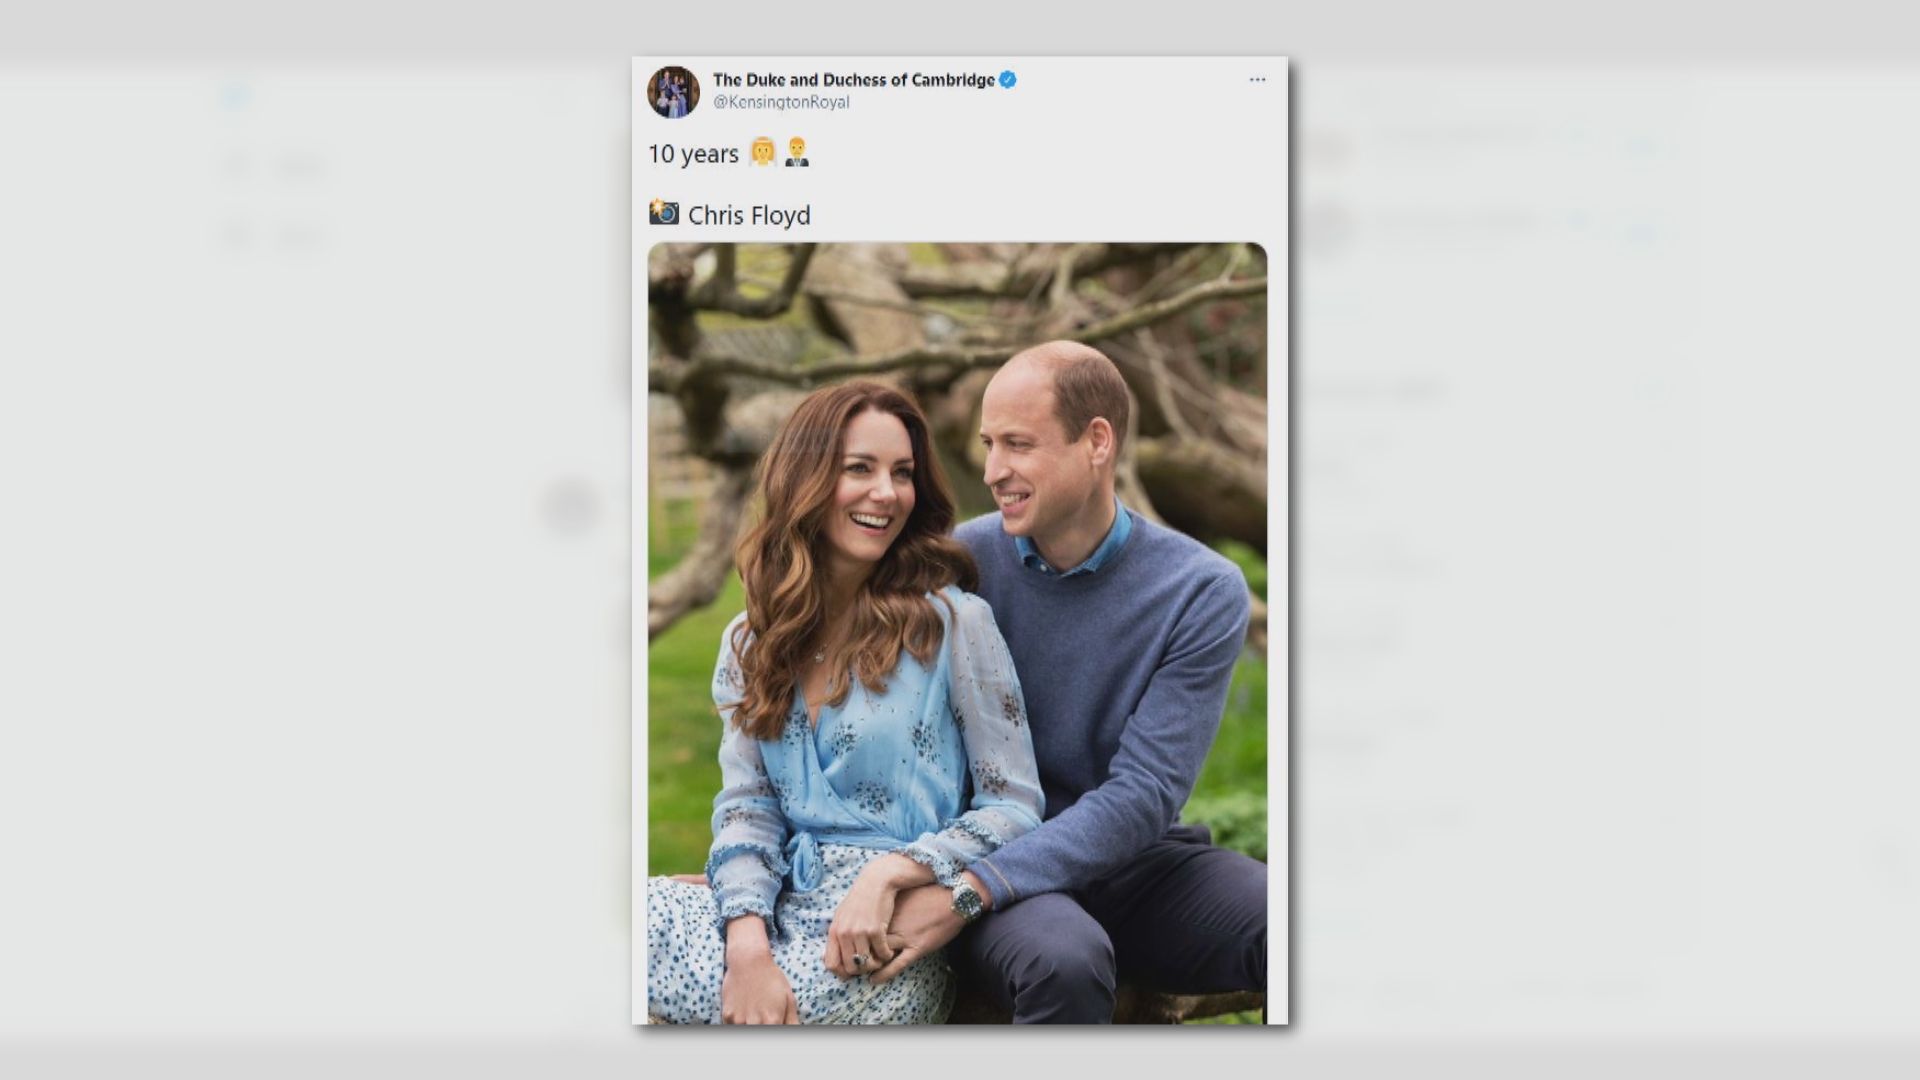 【環球薈報】英王室發放照片慶祝威廉與凱蒂結婚十周年